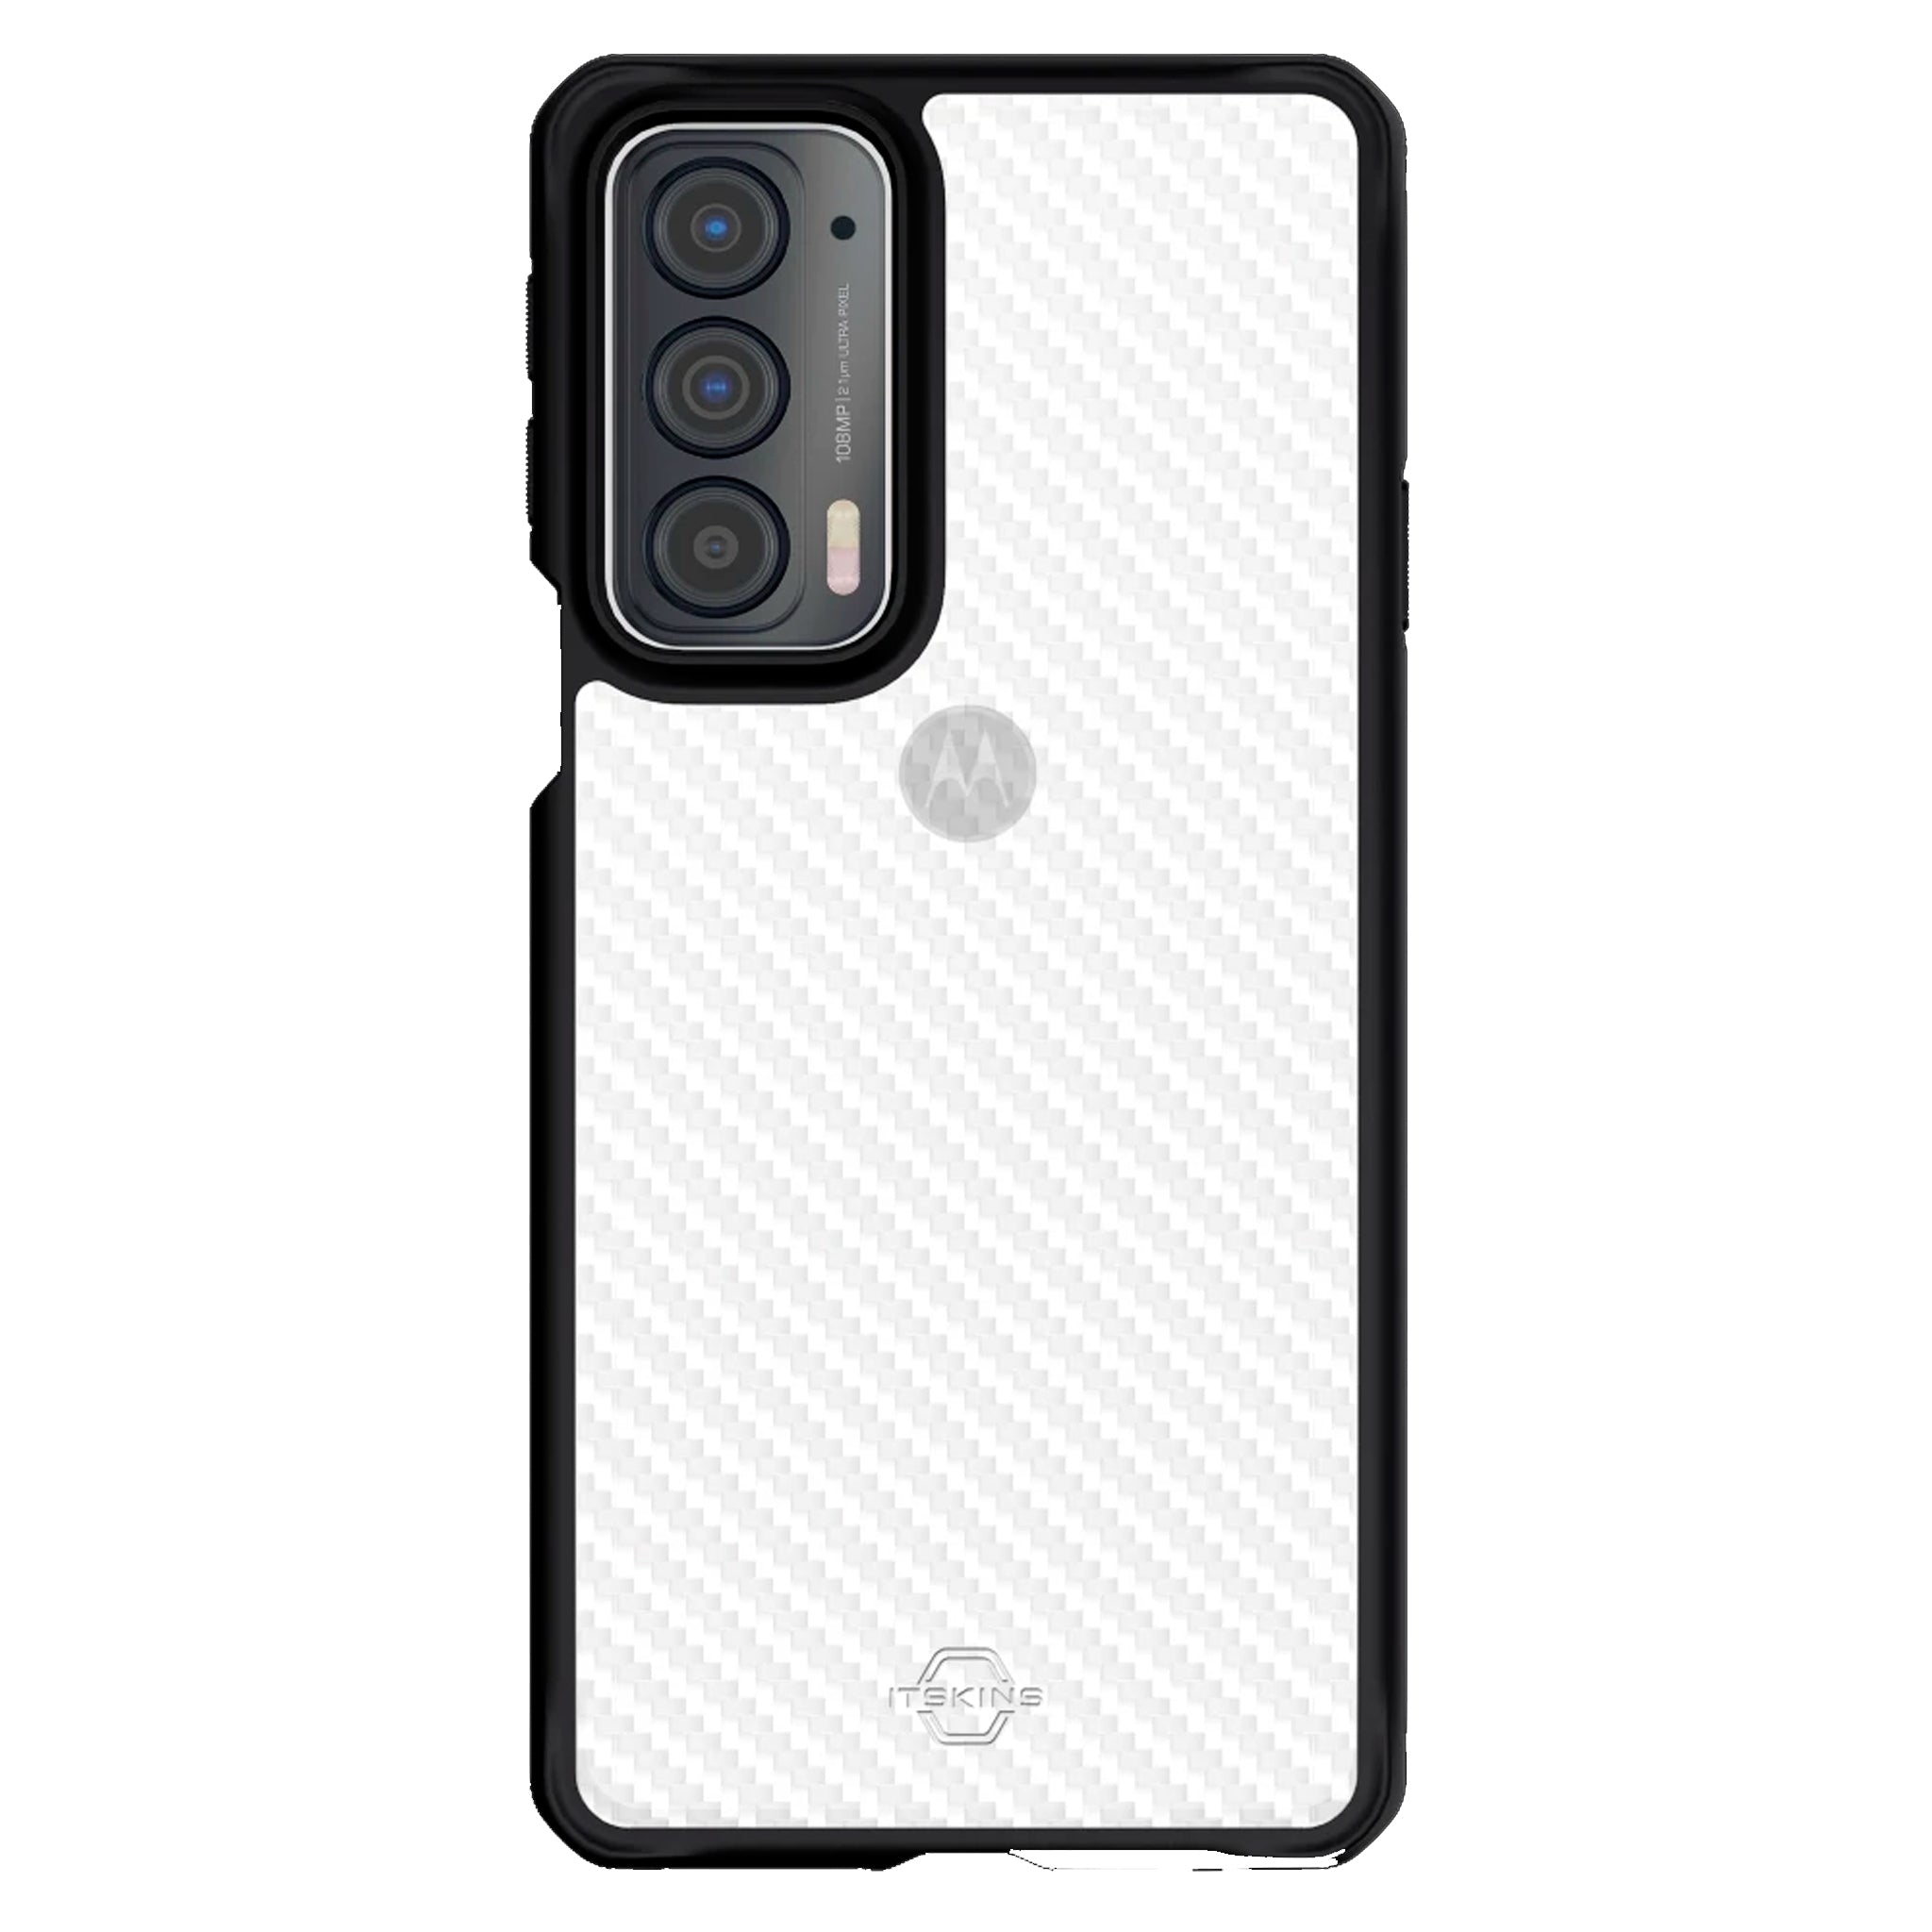 Itskins - Hybrid Tek Case For Motorola Edge (2021) / Edge 5g Uw - Black And Transparent